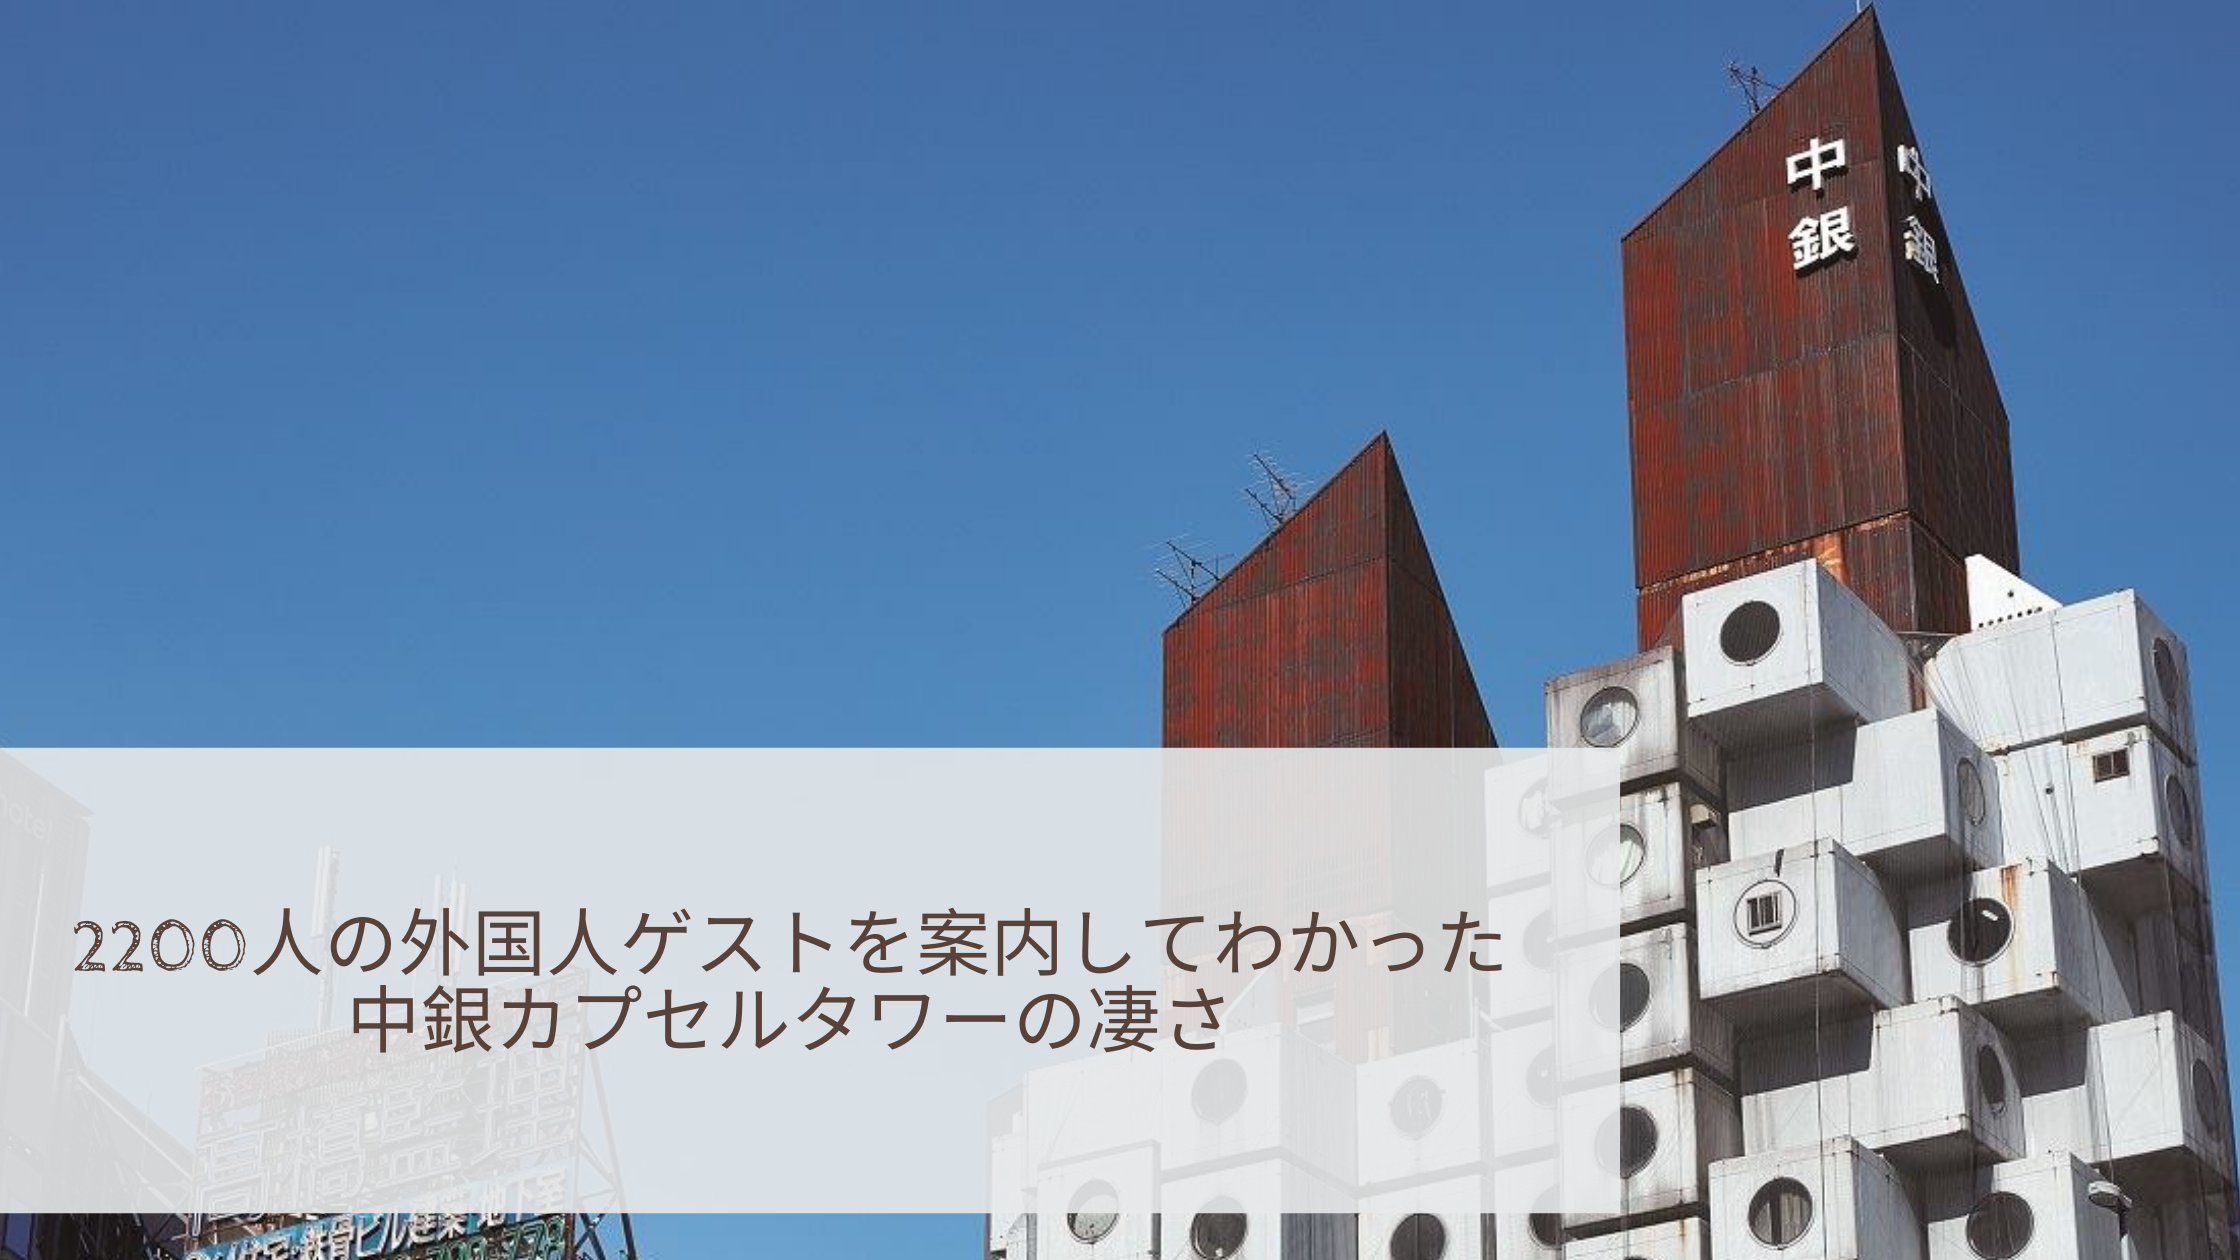 20人の外国人ゲストを案内してわかった中銀カプセルタワーの凄さ Showcase Tokyo Architecture Tours